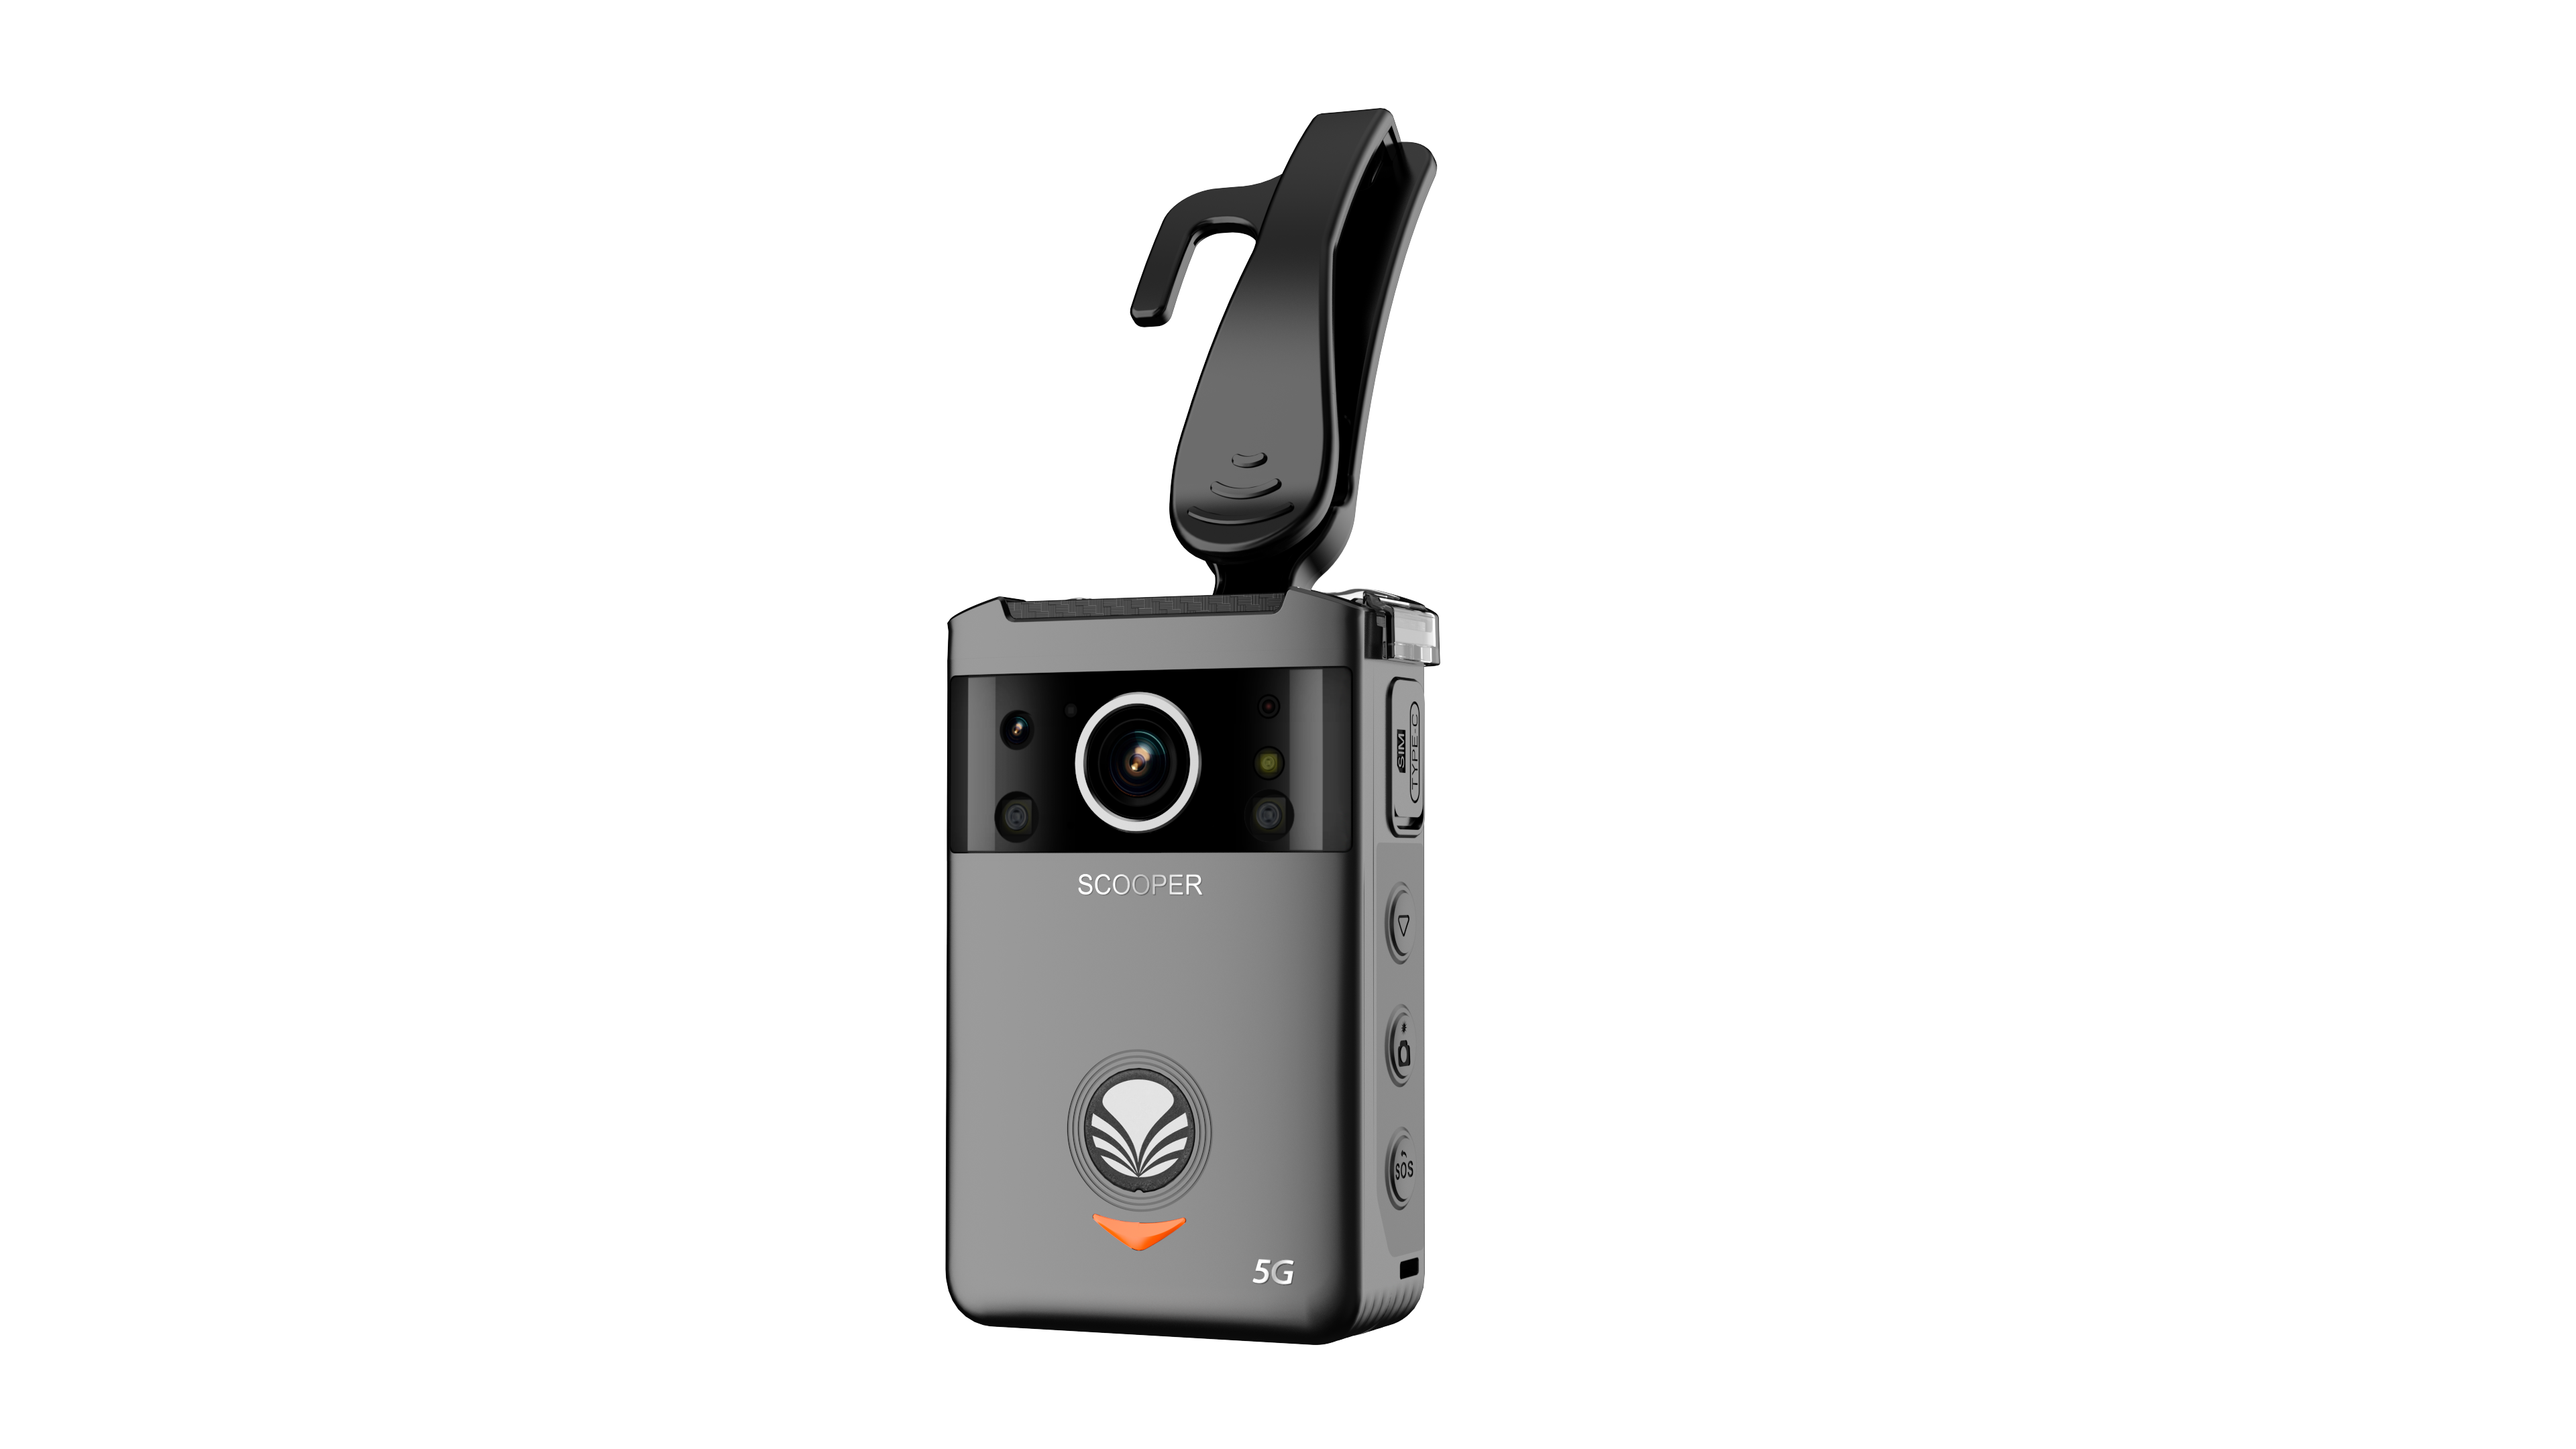 185-граммовая камера для ношения на теле с длительным сроком службы батареи для полиции